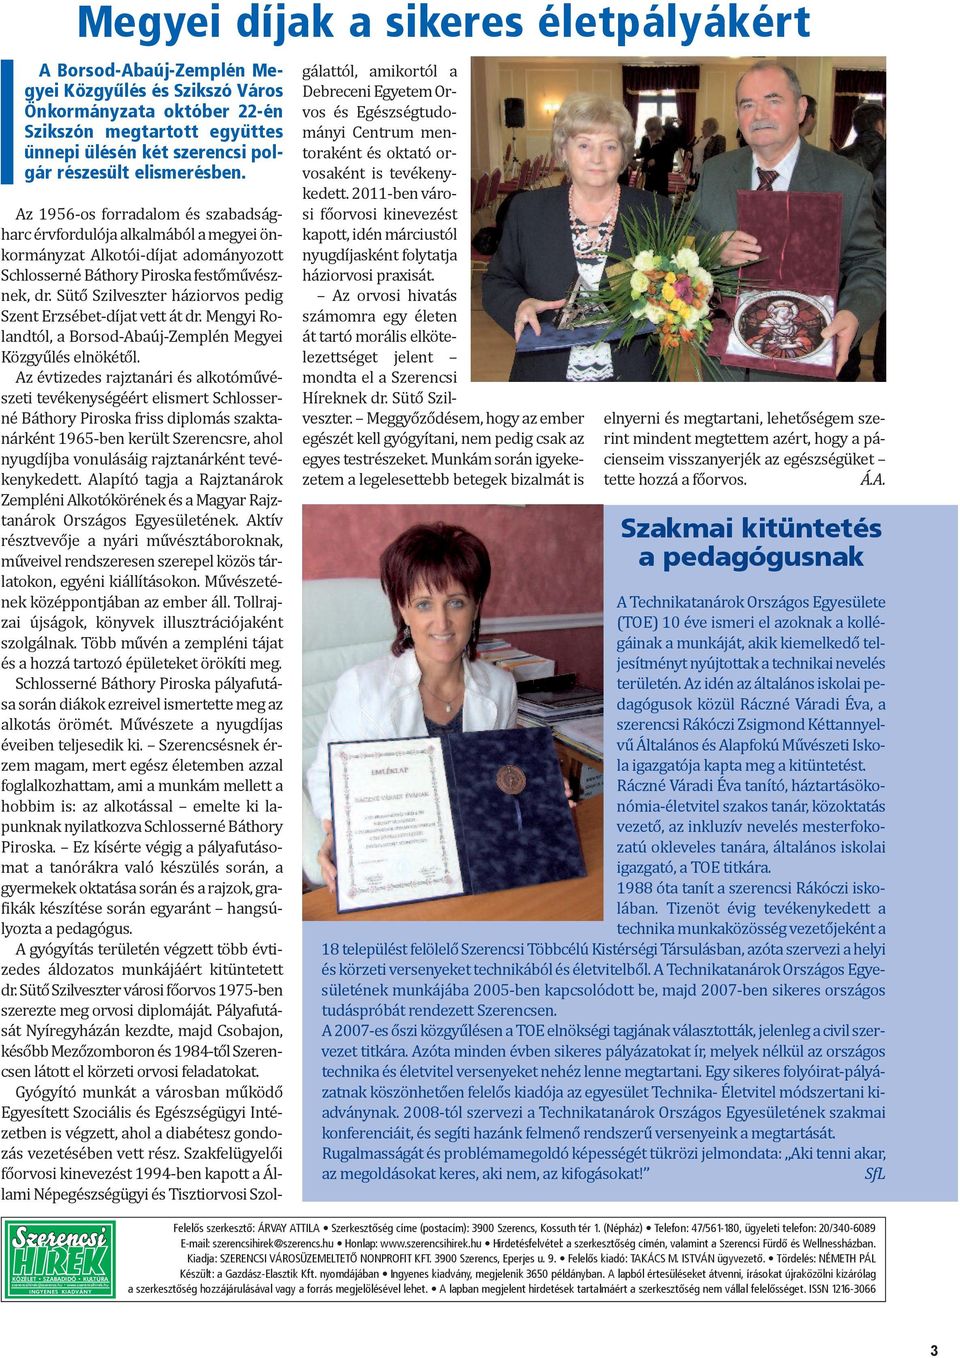 Sütő Szilveszter háziorvos pedig Szent Erzsébet-díjat vett át dr. Mengyi Rolandtól, a Borsod-Abaúj-Zemplén Megyei Közgyűlés elnökétől.